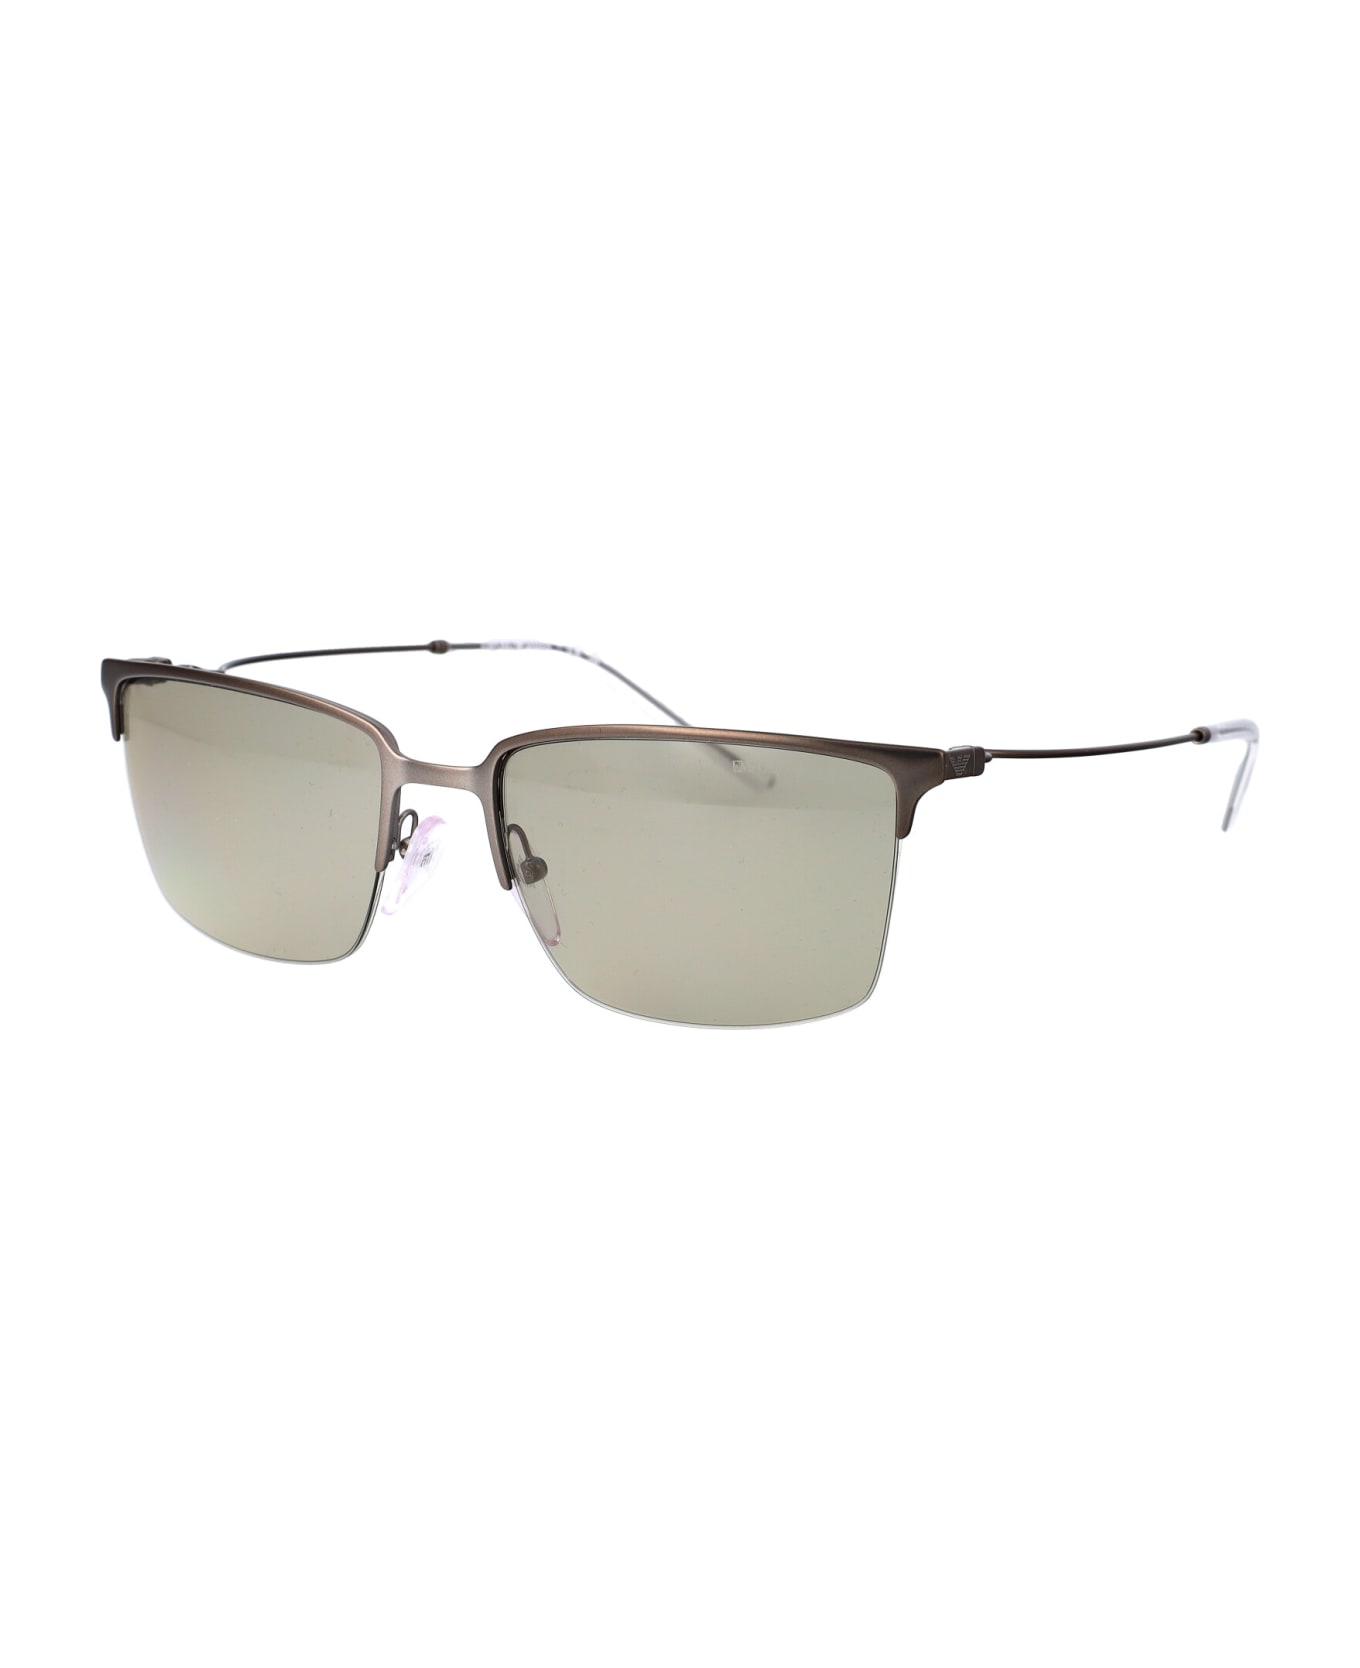 Emporio Armani 0ea2155 Sunglasses - 3003/3 Matte Gunmetal